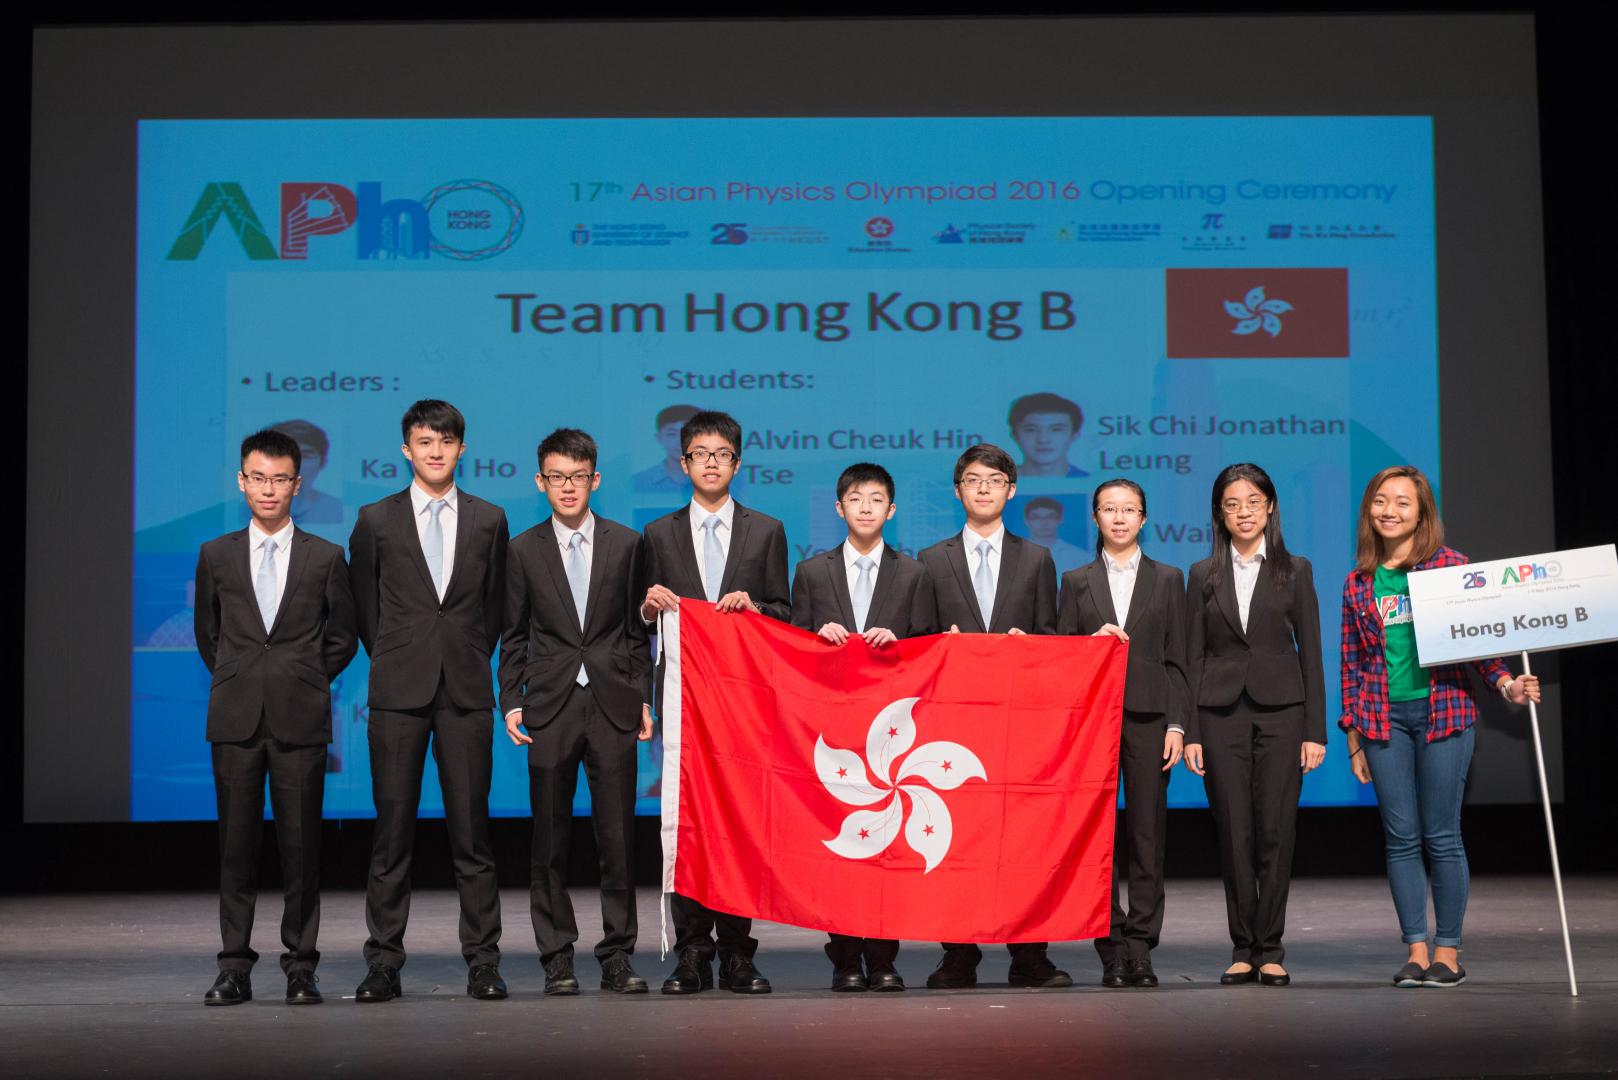  Hong Kong team